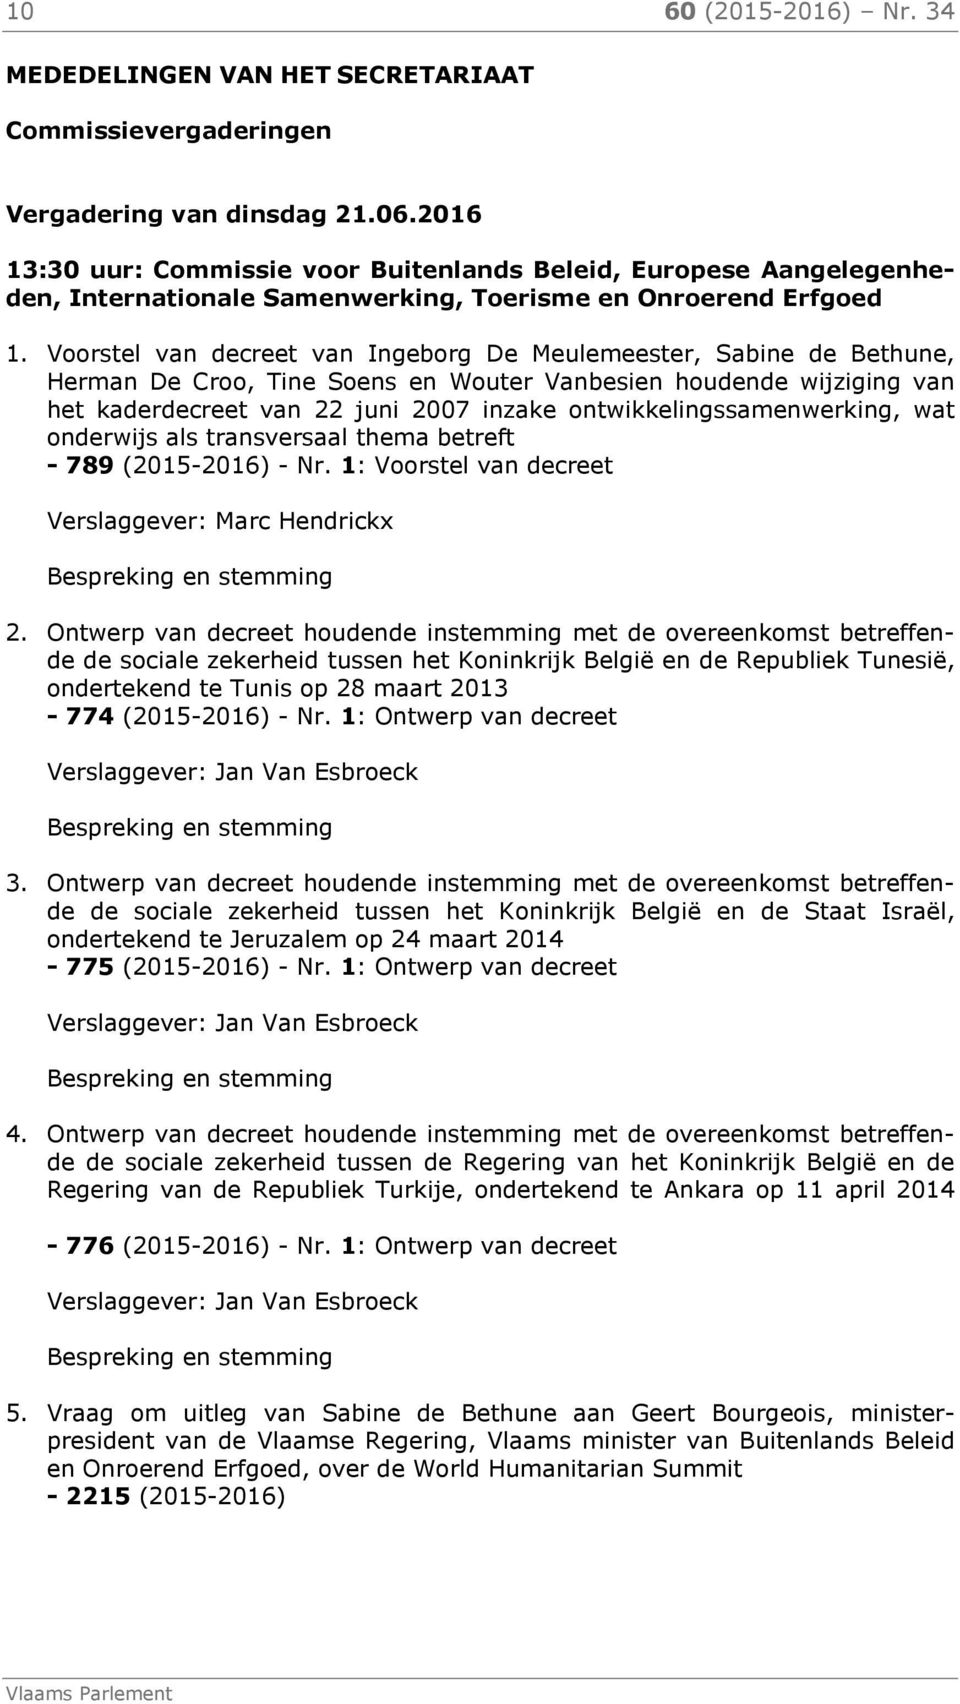 Voorstel van decreet van Ingeborg De Meulemeester, Sabine de Bethune, Herman De Croo, Tine Soens en Wouter Vanbesien houdende wijziging van het kaderdecreet van 22 juni 2007 inzake